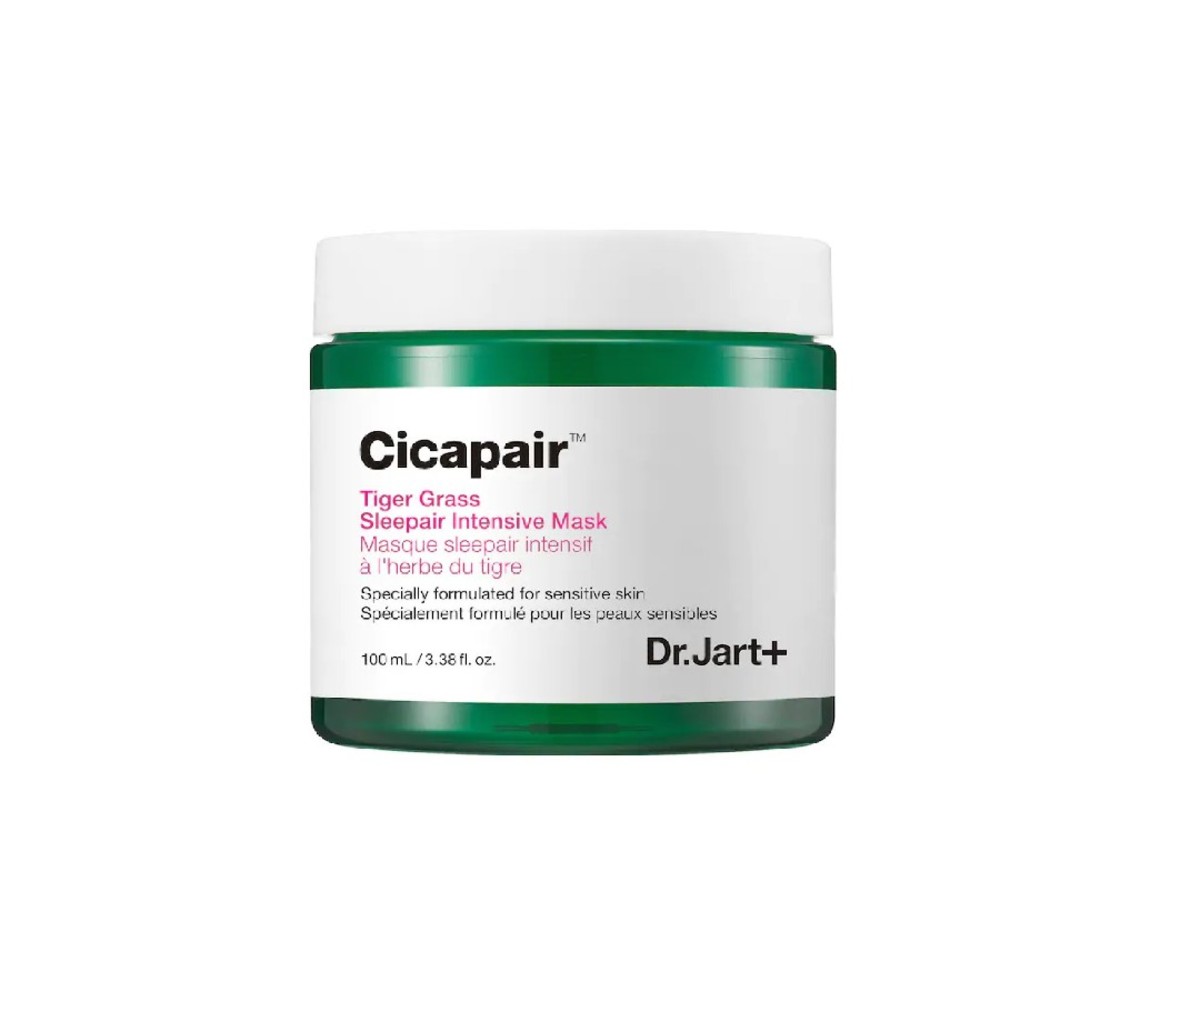 Dr. Jart+ Cicapair Tiger Grass Mask